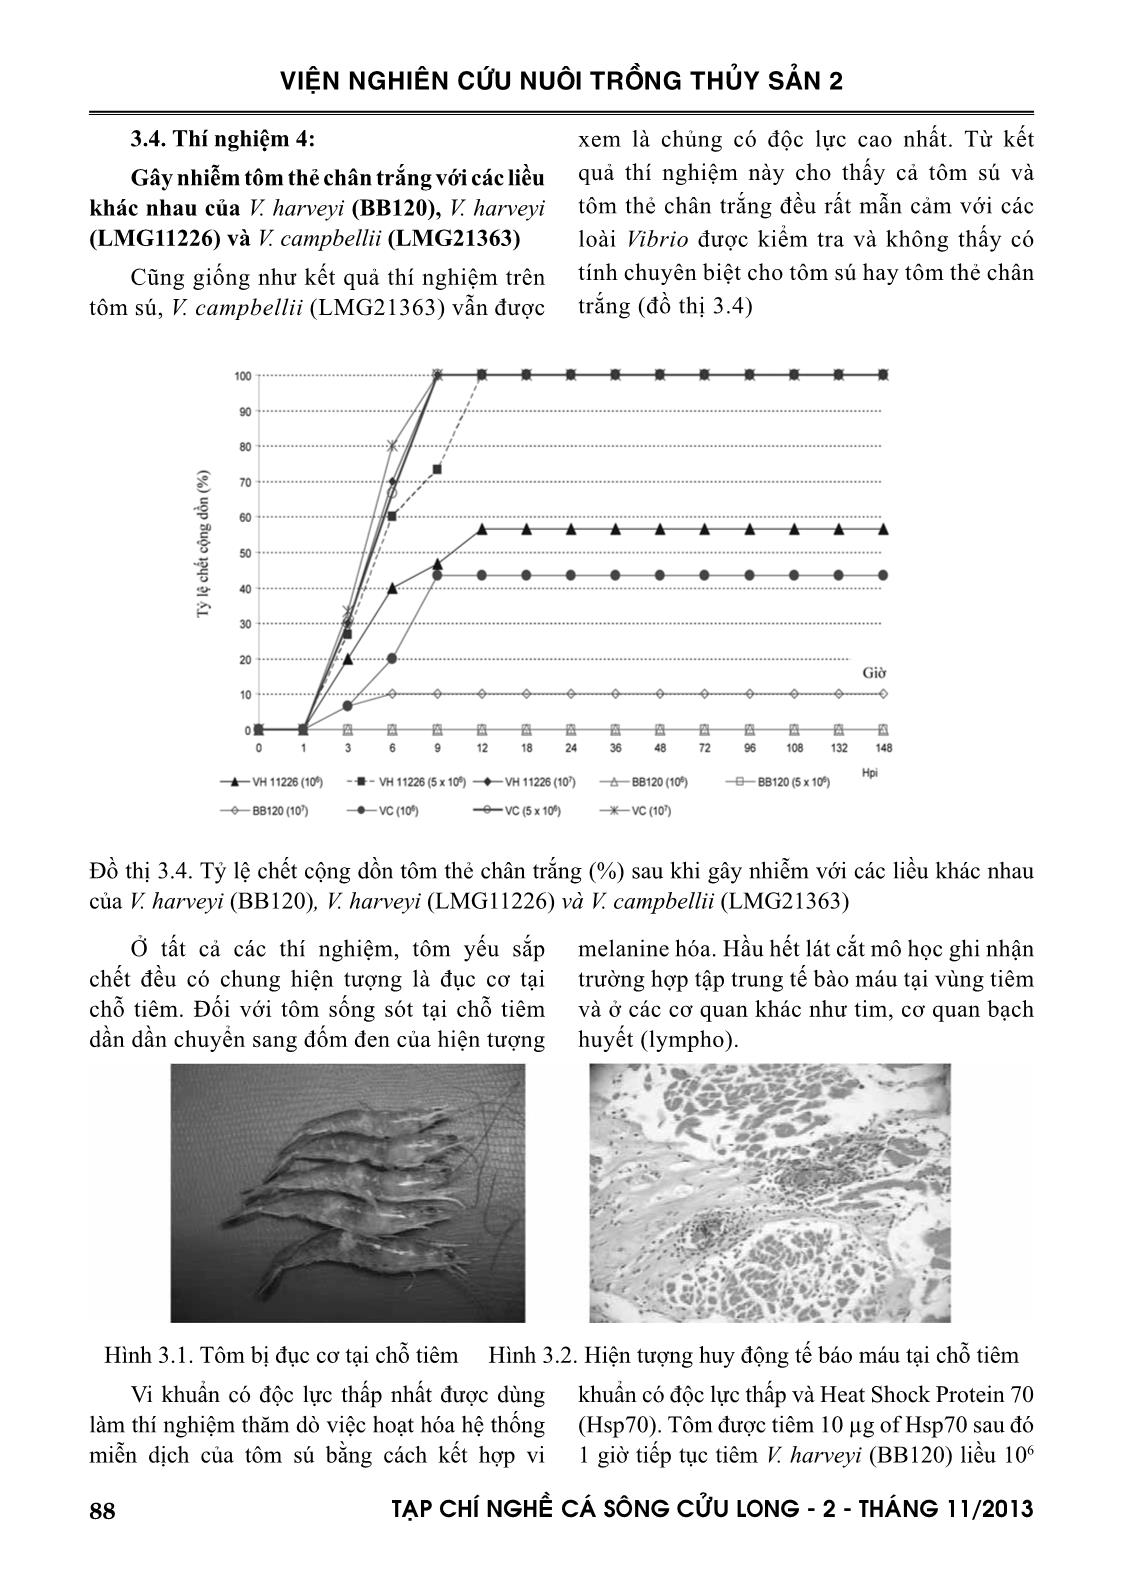 Độc lực của các chủng vibrio đối với tôm sú và tôm thẻ chân trắng trang 6